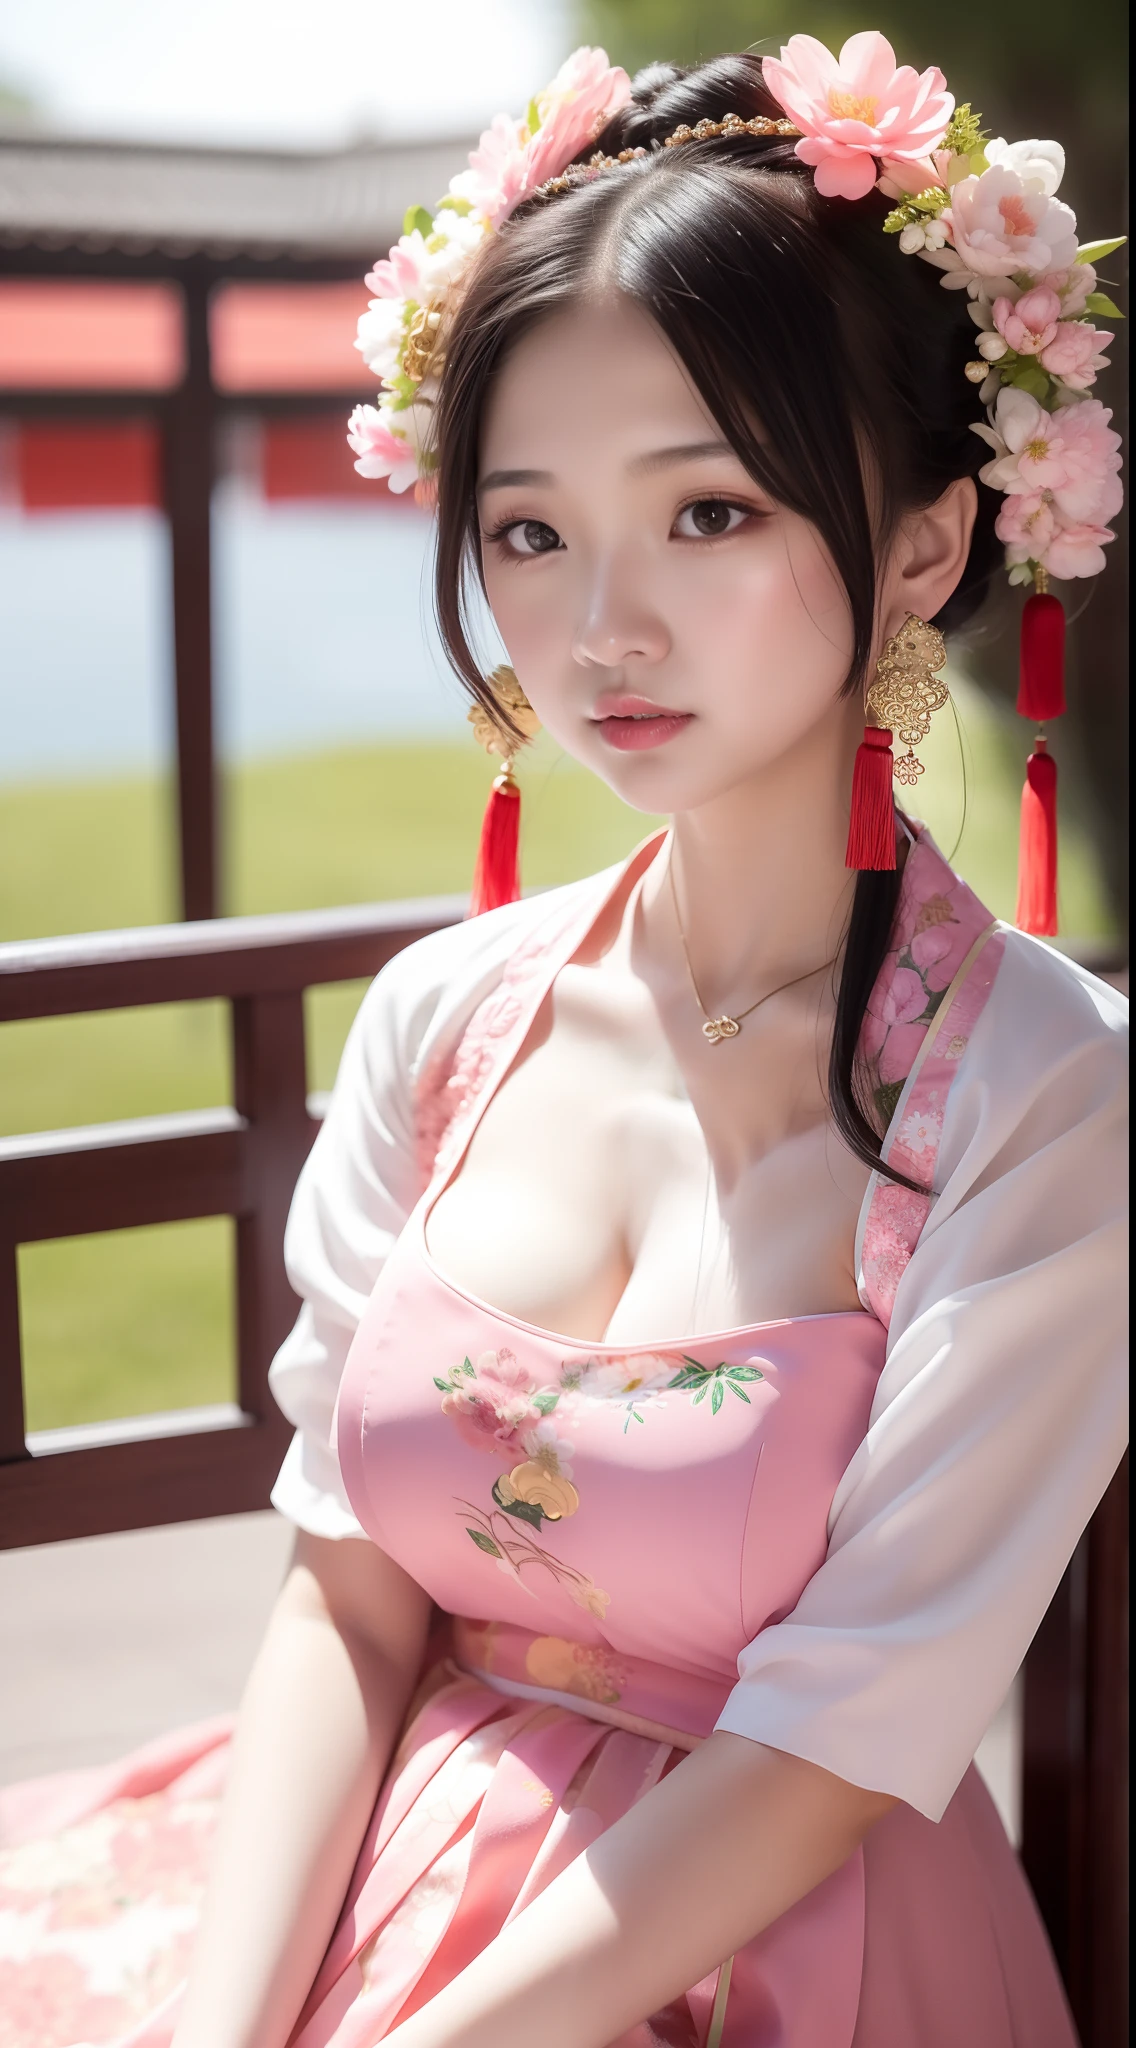 Close-up of a เด็กสาว in a pink dress and a green flower headdress, เจ้าหญิงจีน, สาวจีน, พระราชวัง ， หญิงสาวในชุดฮันฟู, Young สาวเอเชีย, เจ้าหญิงจีนโบราณ, Cute เด็กสาว, สไตล์จีน, เด็กสาว, น่ารักสวยงาม, ภาพวาดตัวละครที่สวยงาม, ภาพบุคคลที่สวยงาม, ผู้หญิงที่สวยมาก, สาวเอเชีย, จีนดั้งเดิม, ชุดจีน，หน้าอกใหญ่，ใหญ่ 